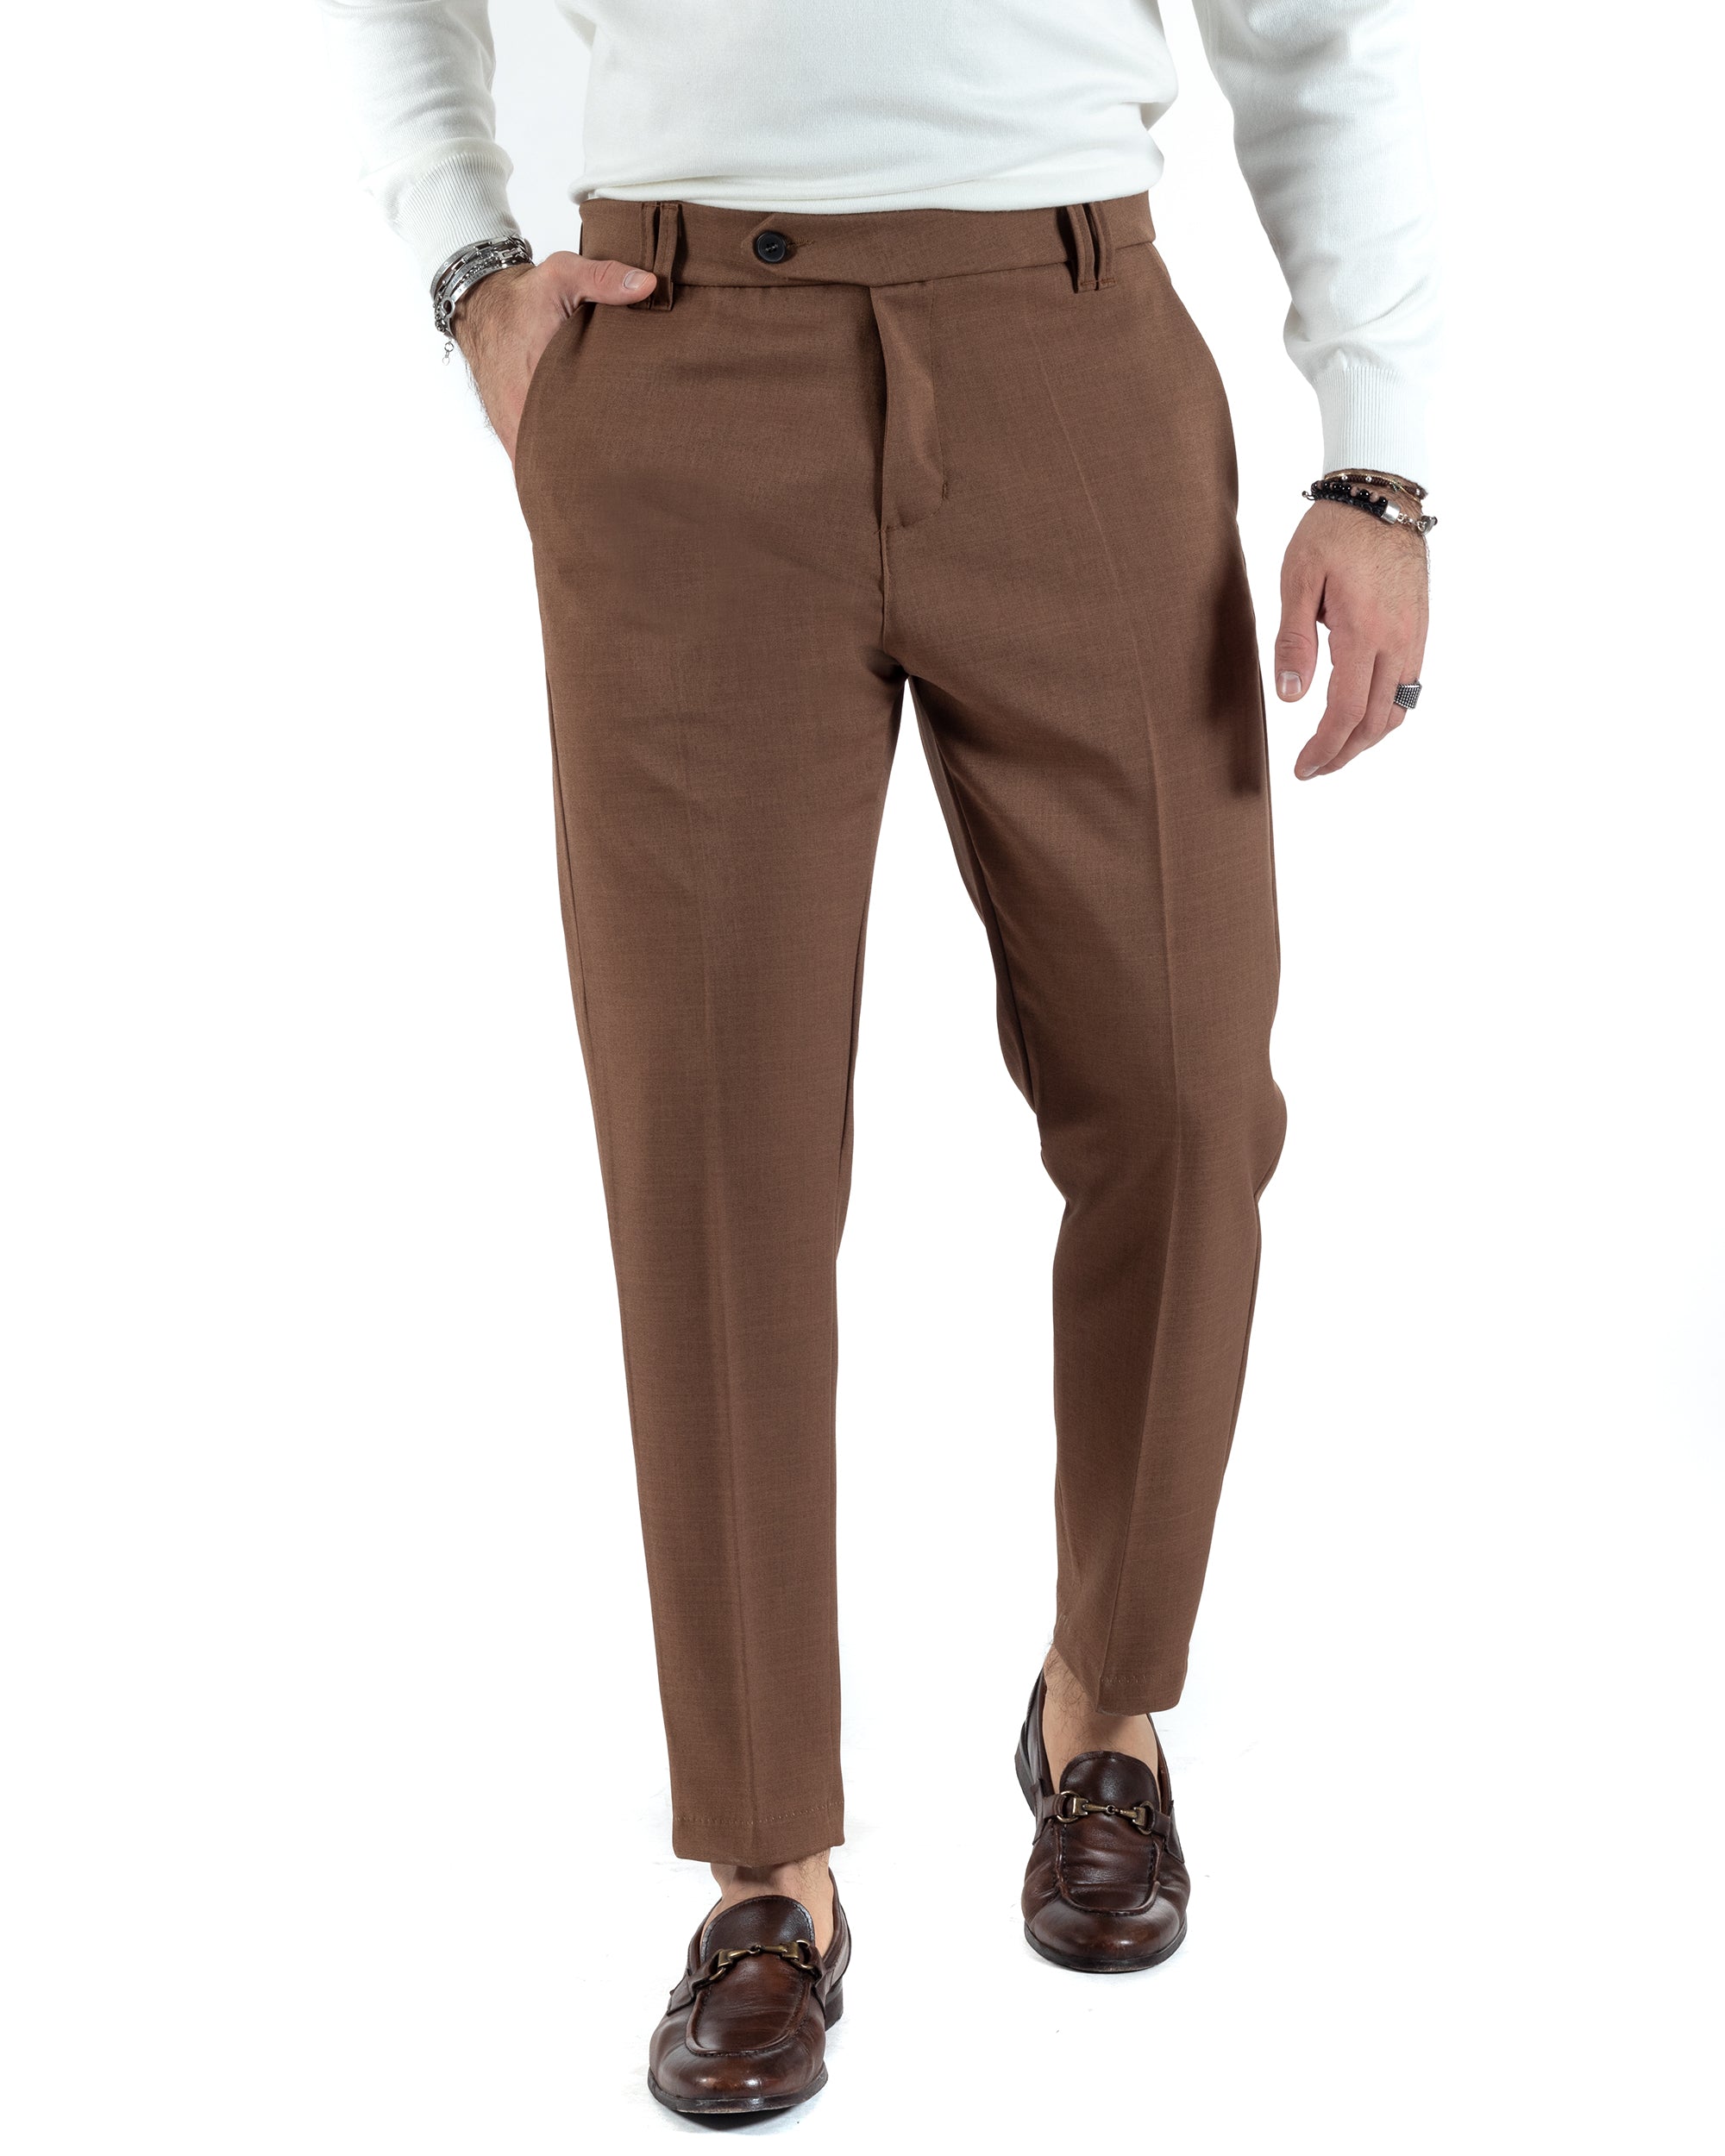 Pantaloni Uomo Viscosa Tasca America Classico Abbottonatura Allungata Casual Marrone GIOSAL-P6008A